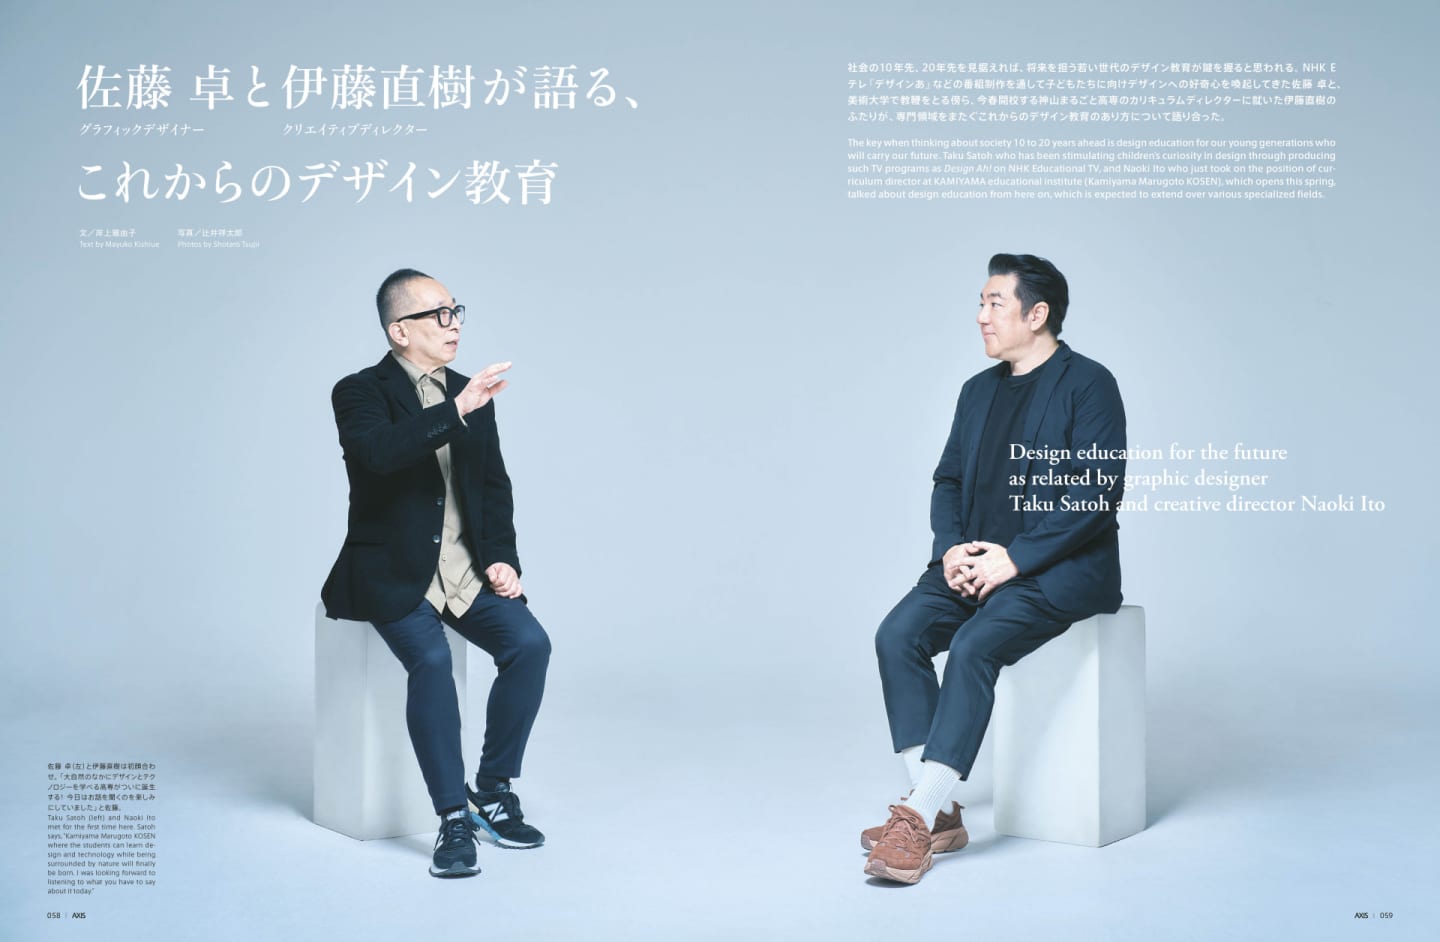 佐藤 卓(グラフィックデザイナー)と伊藤直樹(クリエイティブディレクター)が語る、これからのデザイン教育